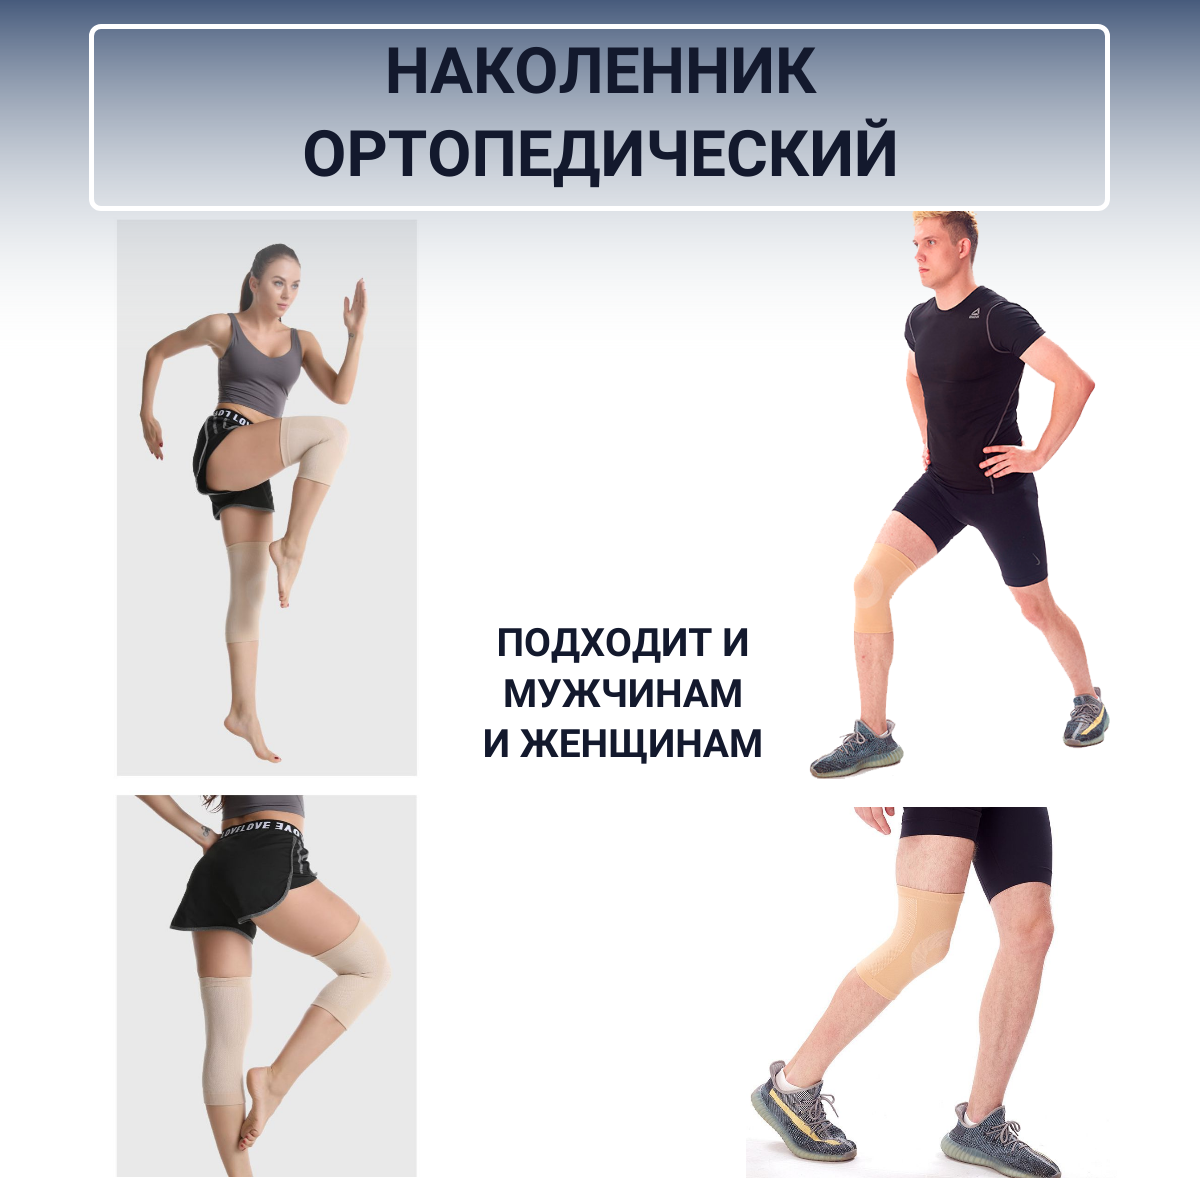 "Наколенник Ортопедический" - 2 штуки, бандаж для коленного сустава, спортивный